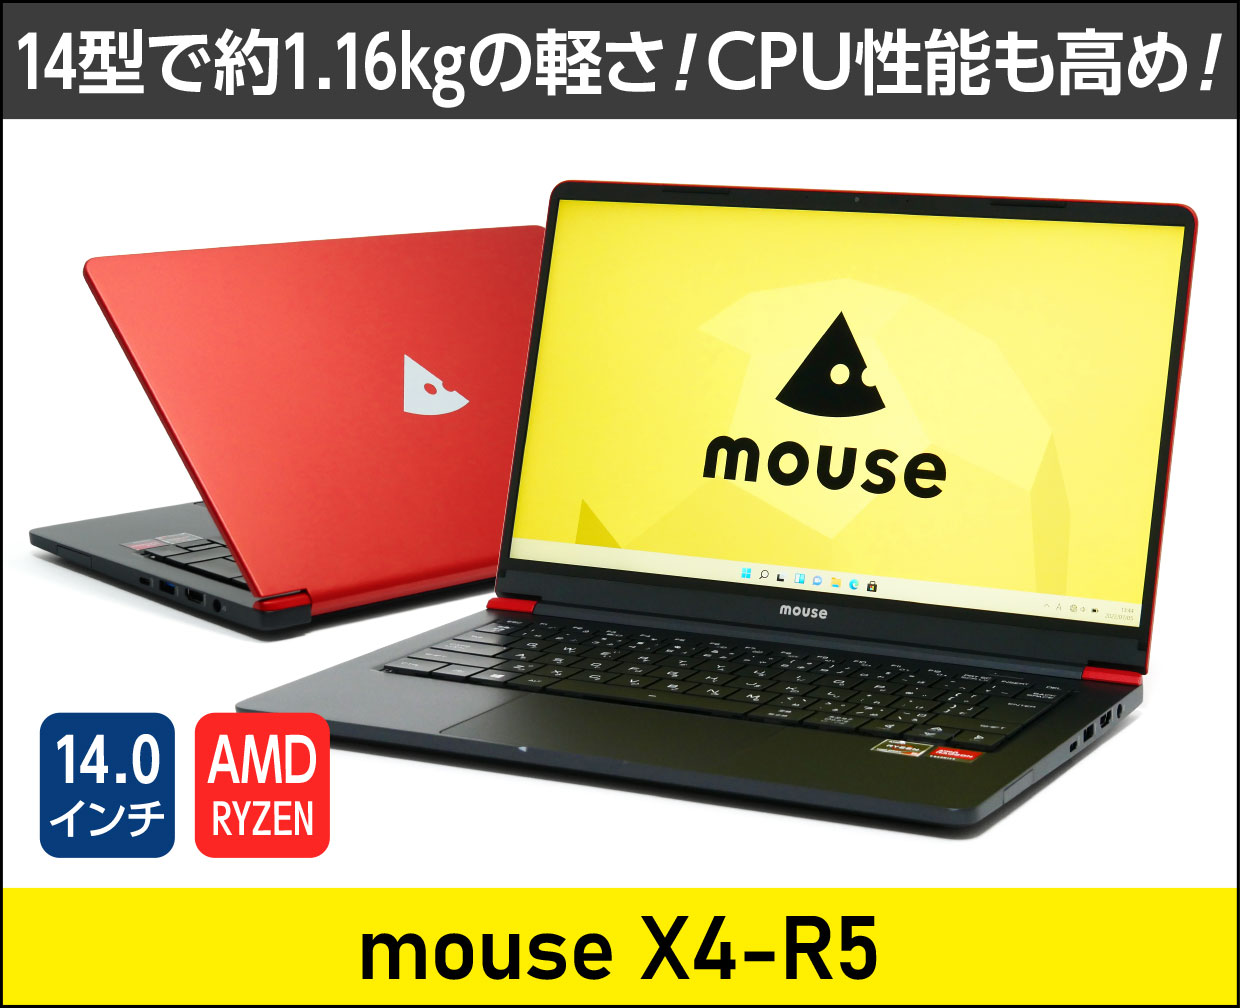 マウスコンピューター mouse X4-R5のメイン画像